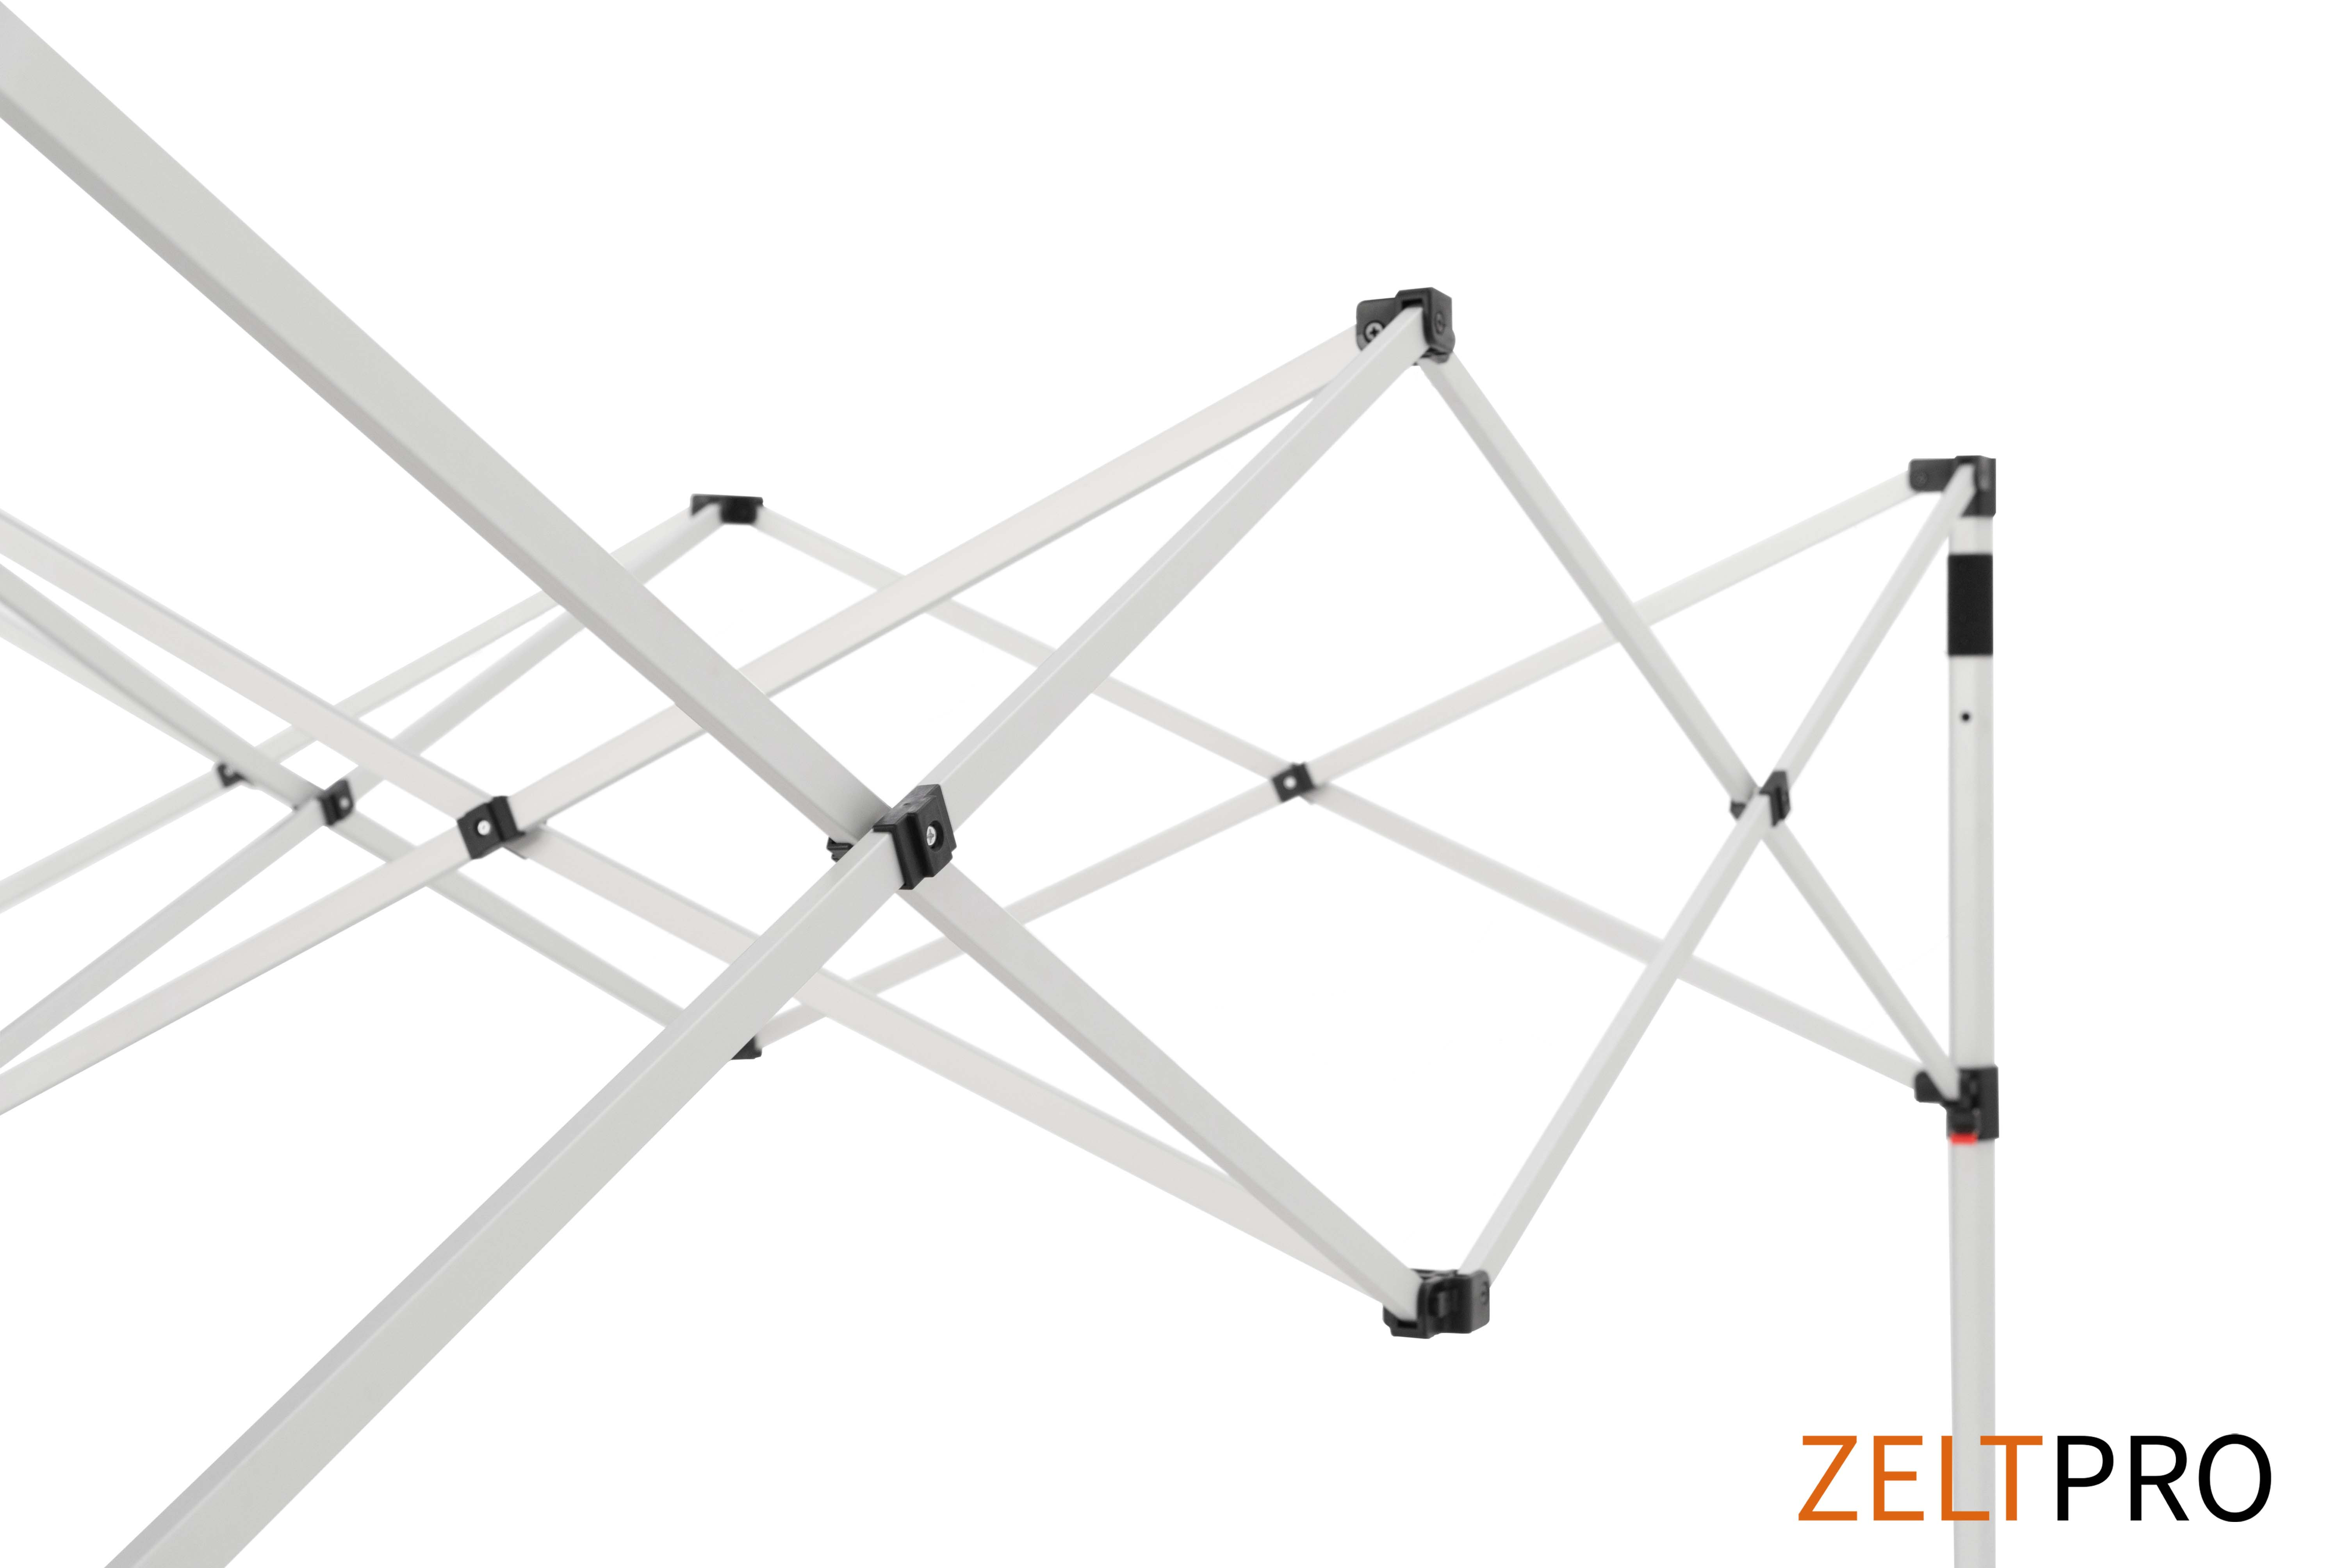 Pop-up telk 3x6 roheline Zeltpro Titan